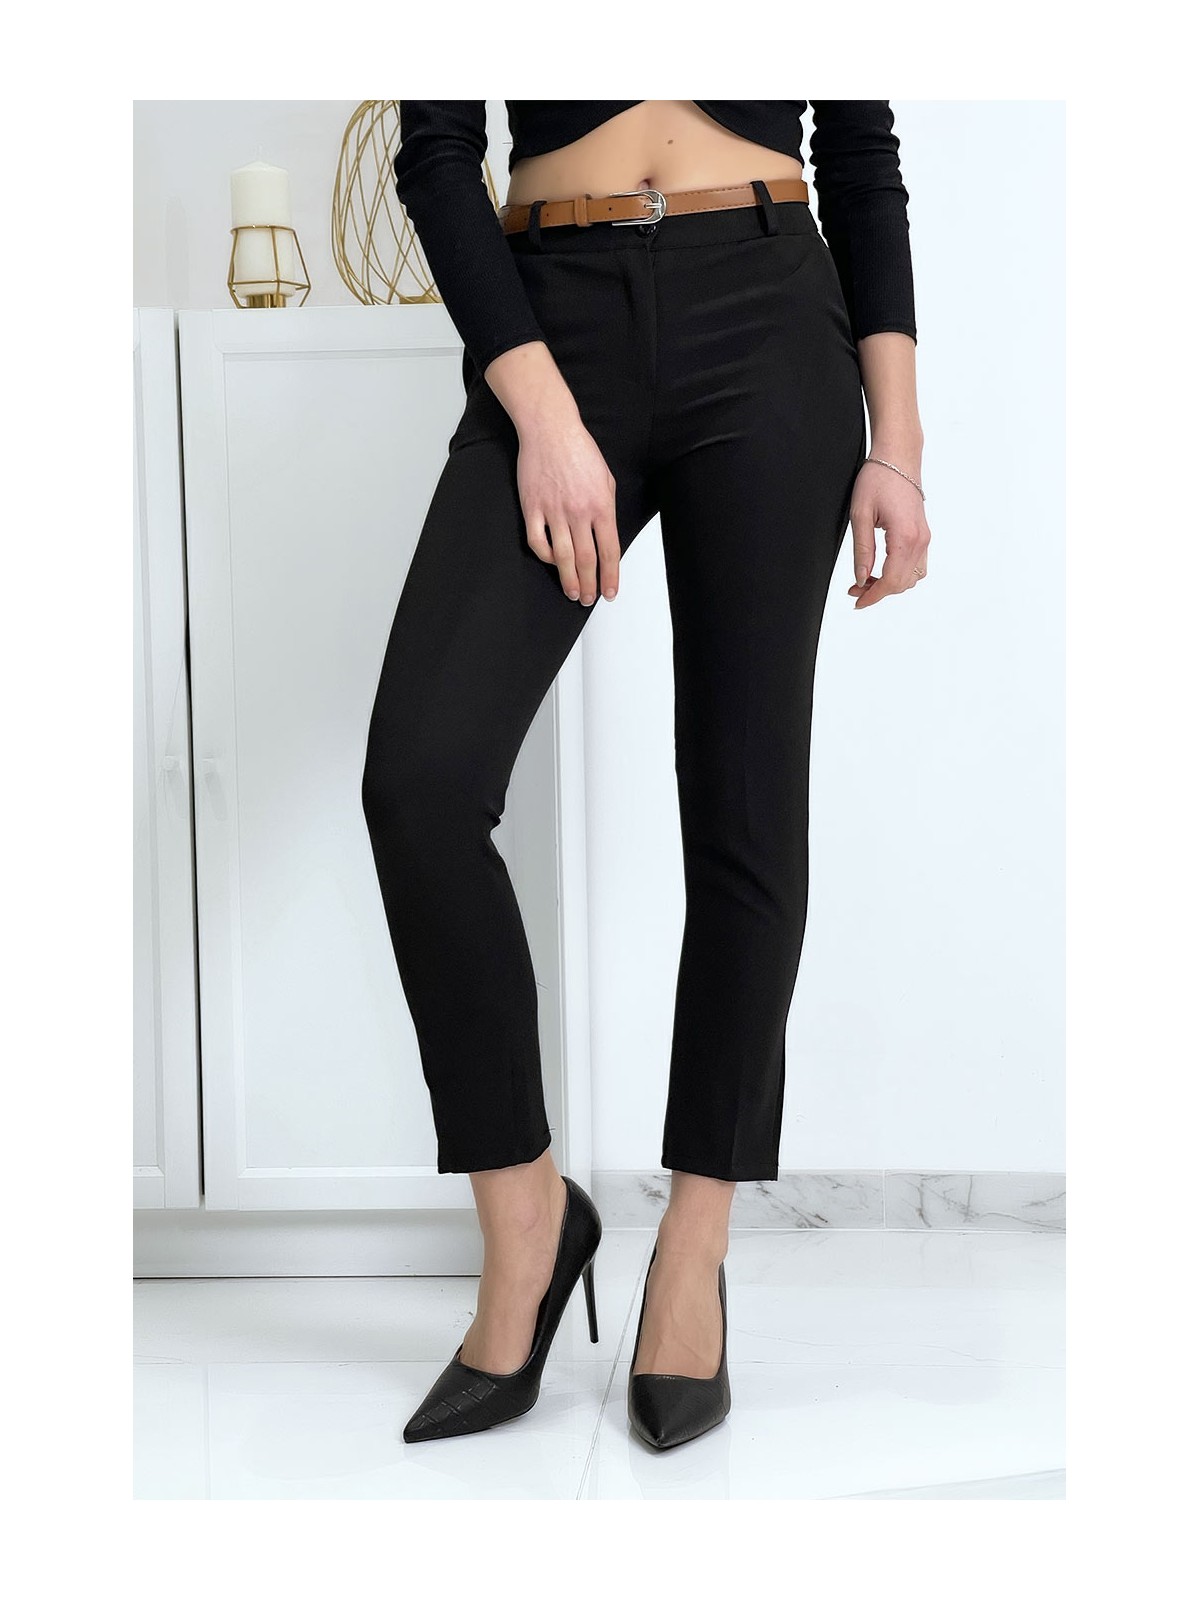 Pantalon working girl noir avec poches et ceinture - 4